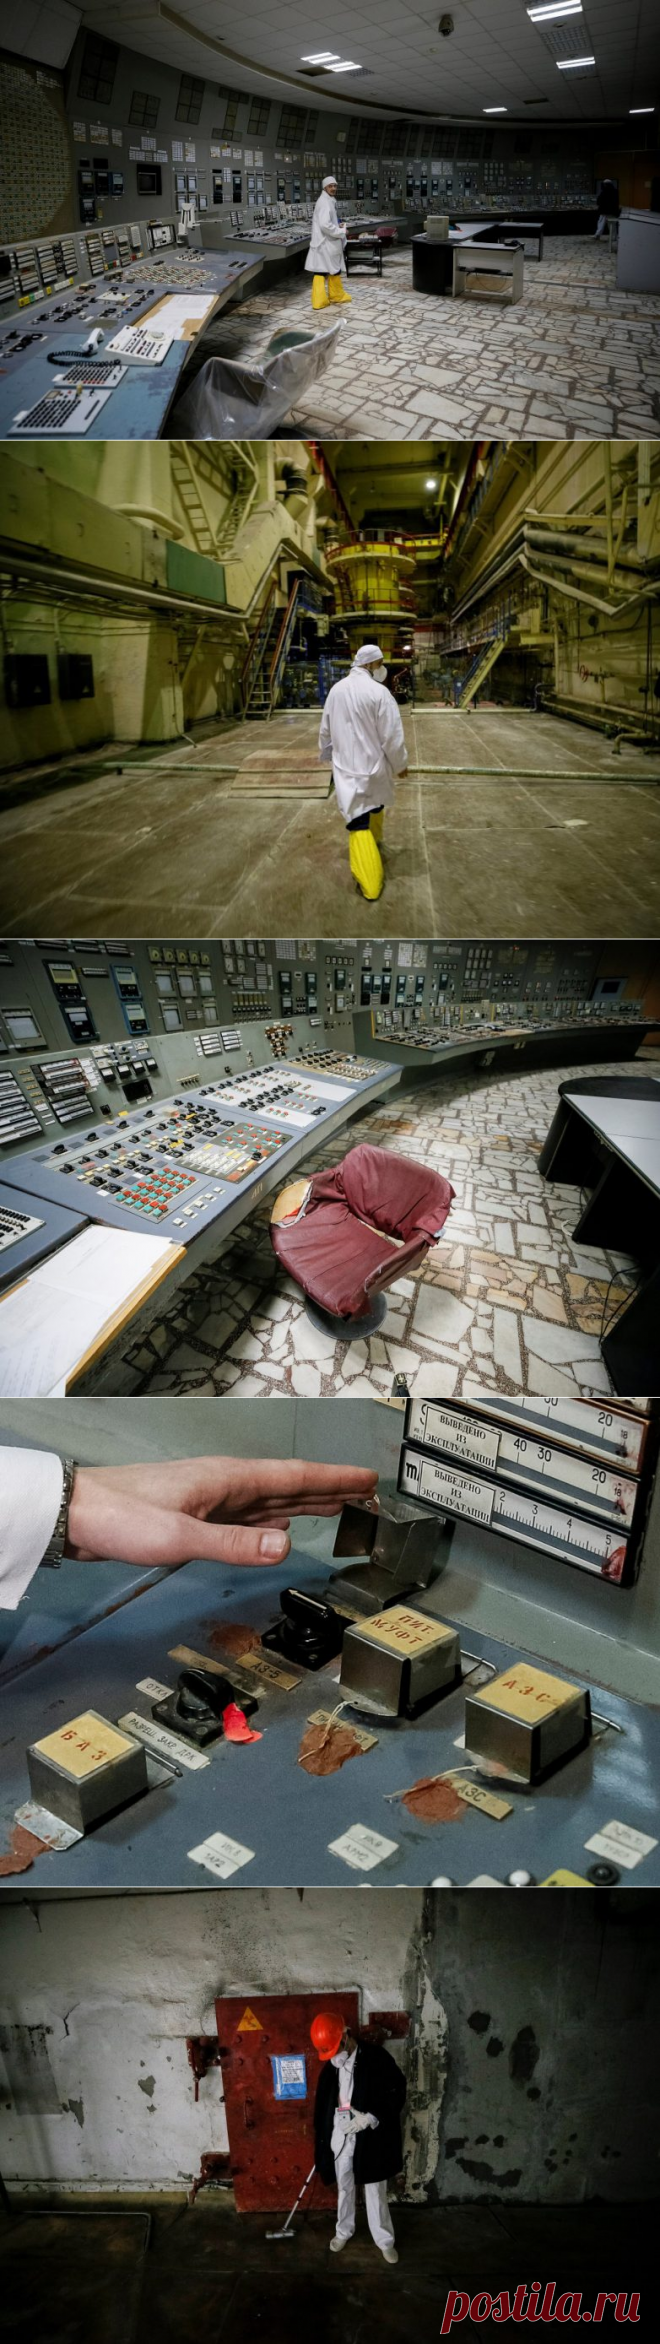 32 года после катастрофы: жутковатая экскурсия по Чернобыльской АЭС / Туристический спутник